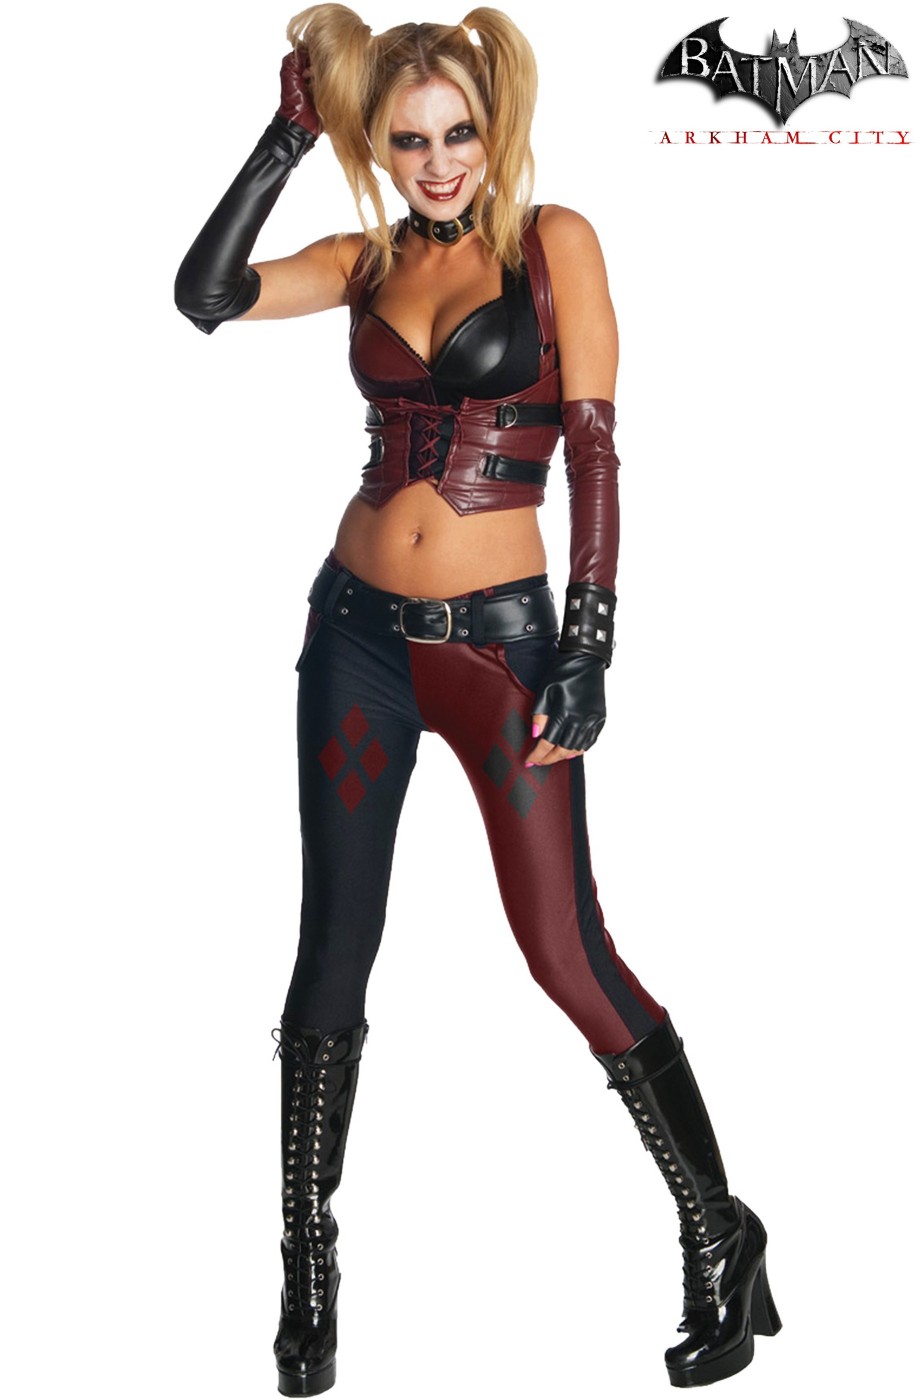 Costume Harley Quinn per il Carnevale - Disponibile su